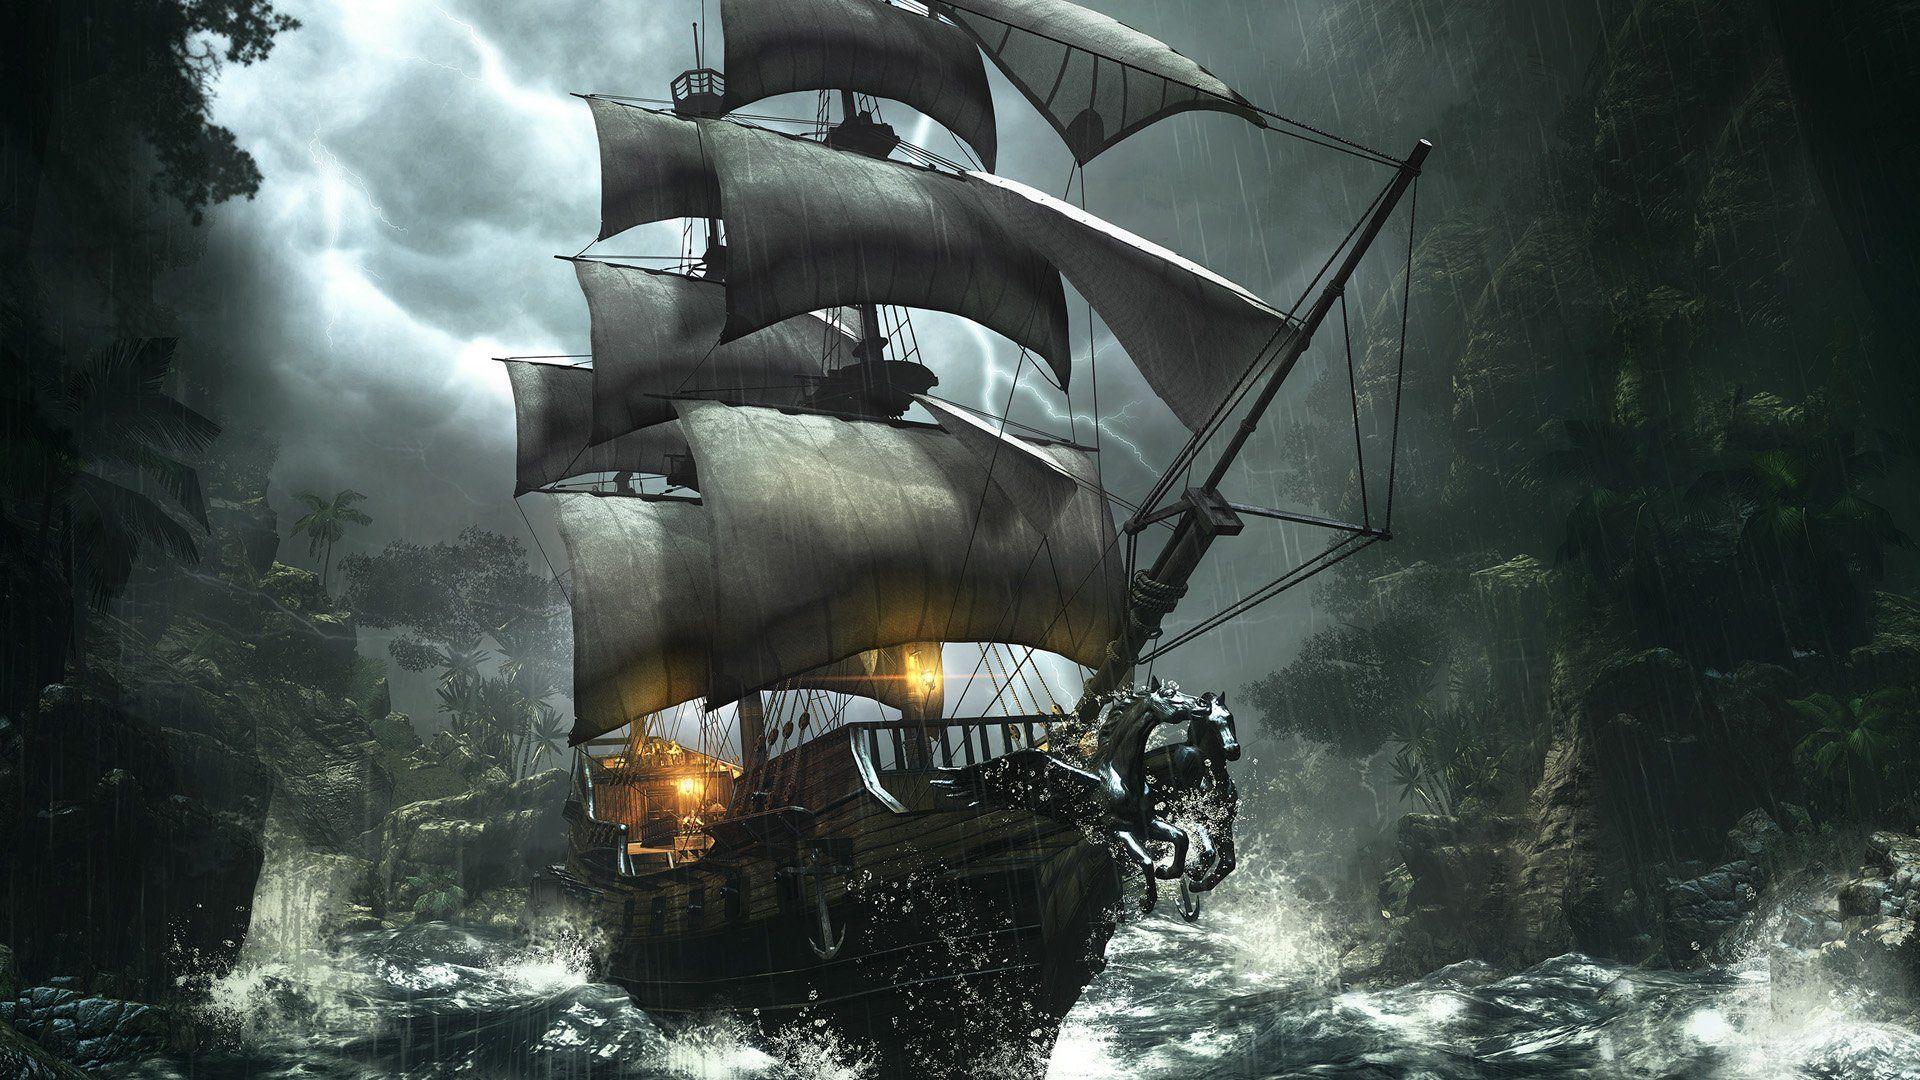 Pirate Ship Picture 08042